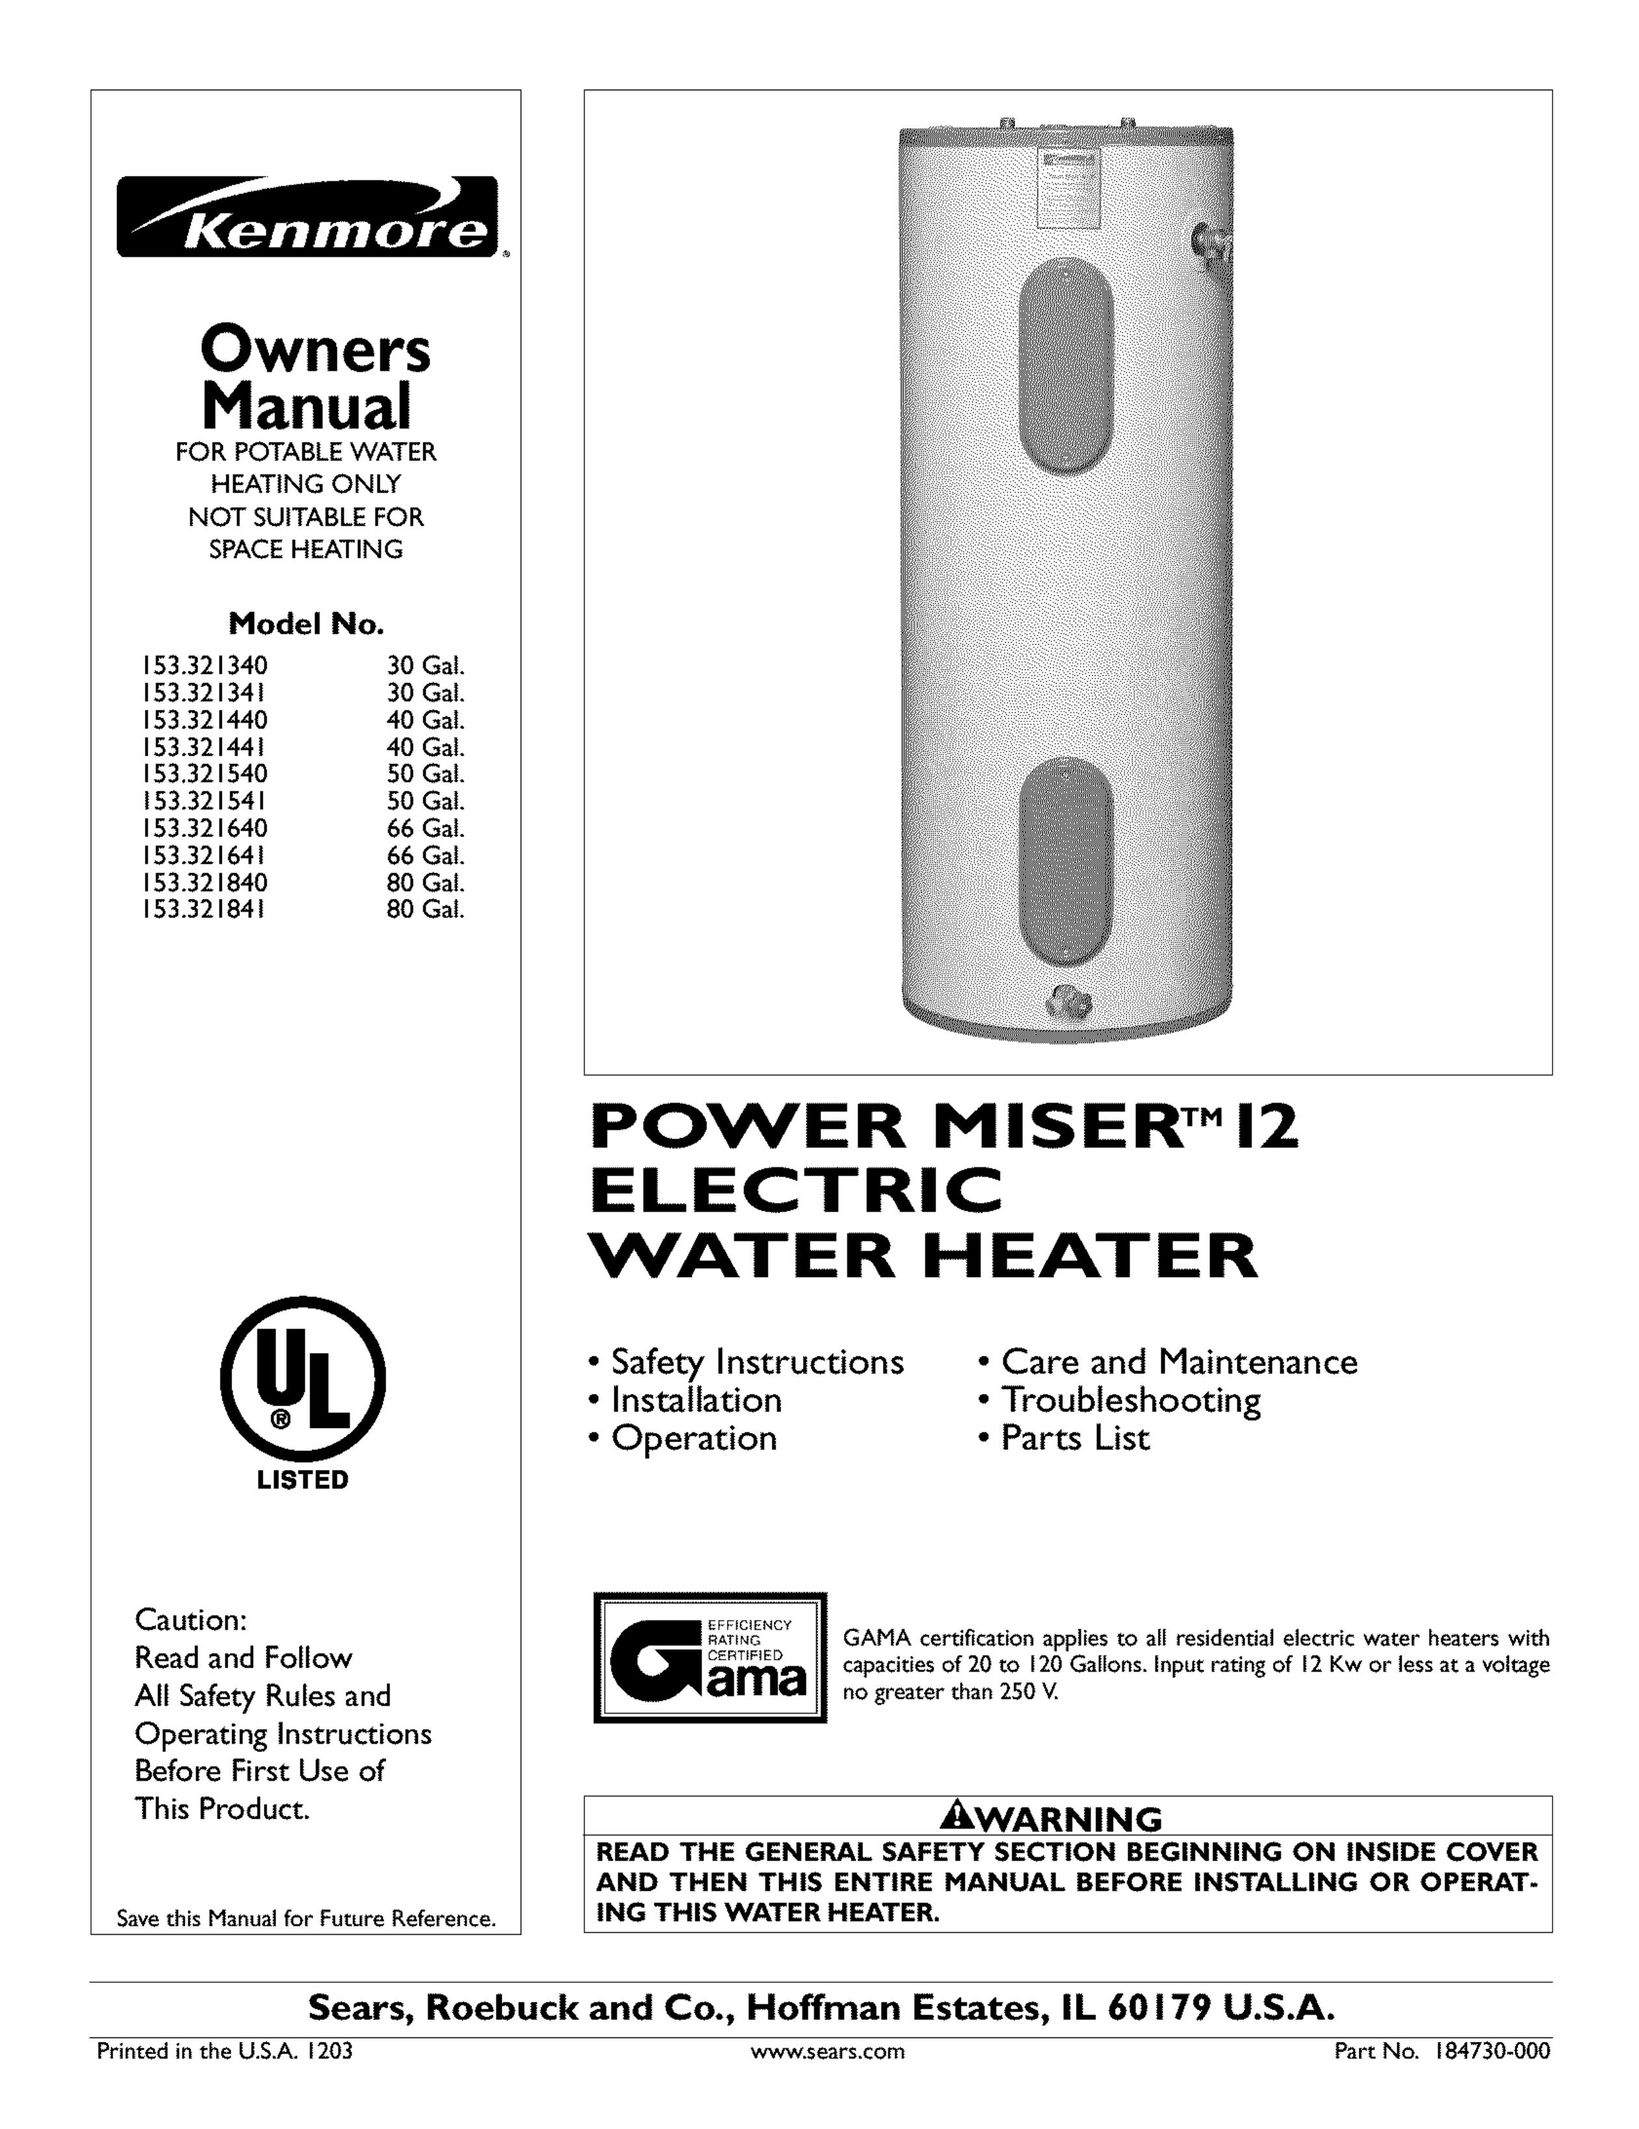 Kenmore 153.321541 Water Heater User Manual